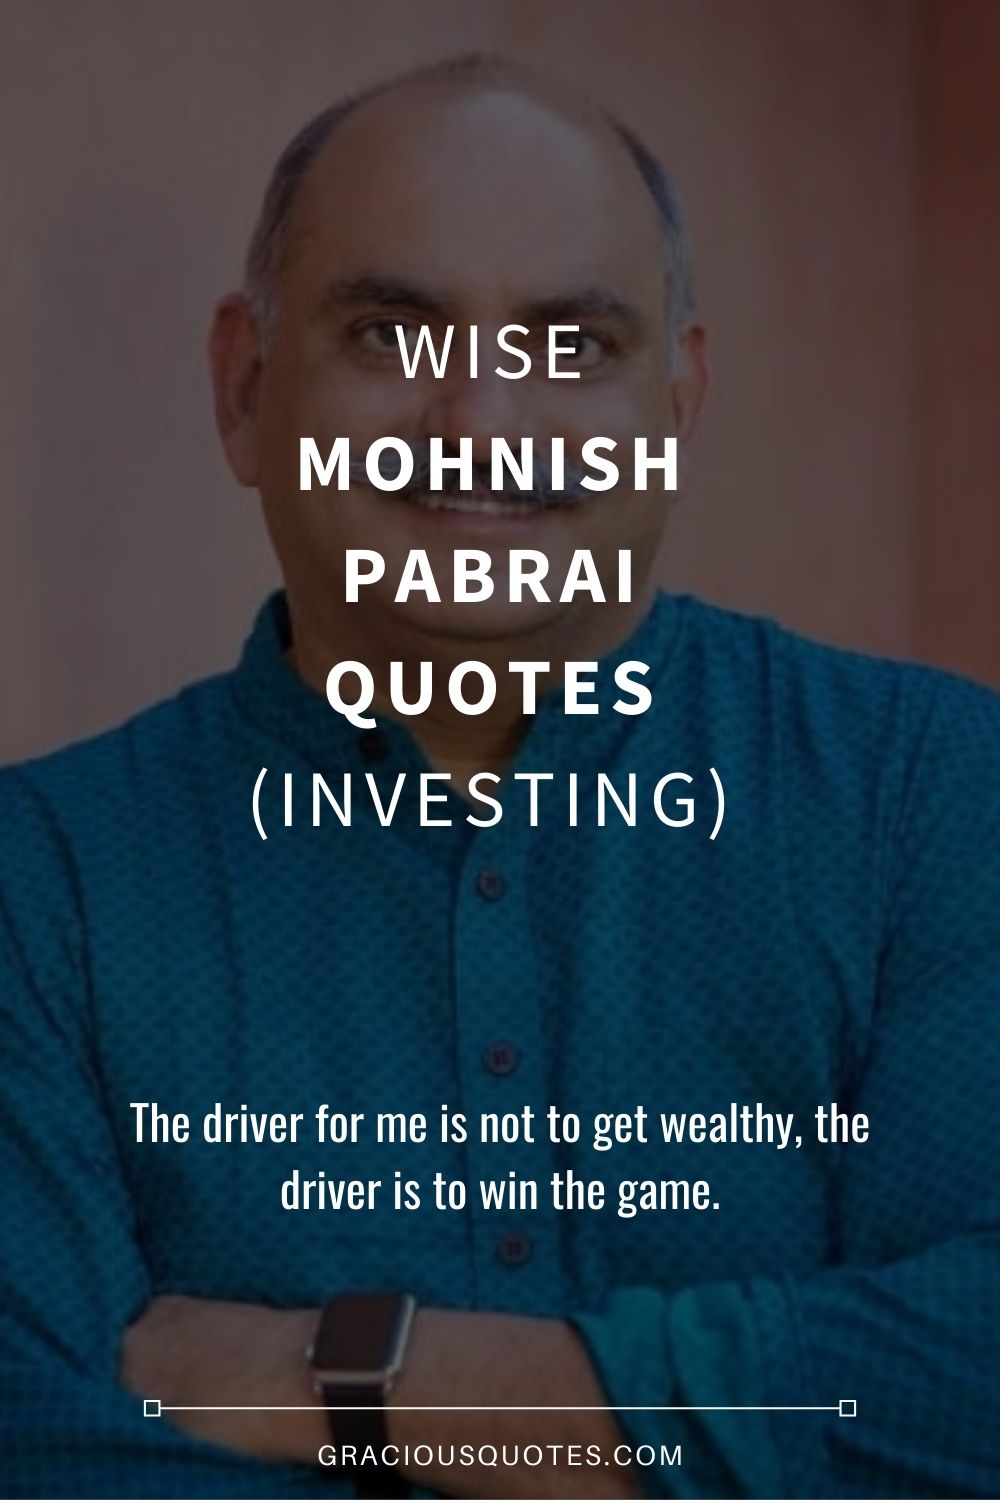 Wise Mohnish Pabrai Quotes (INVESTING) - Gracious Quotes